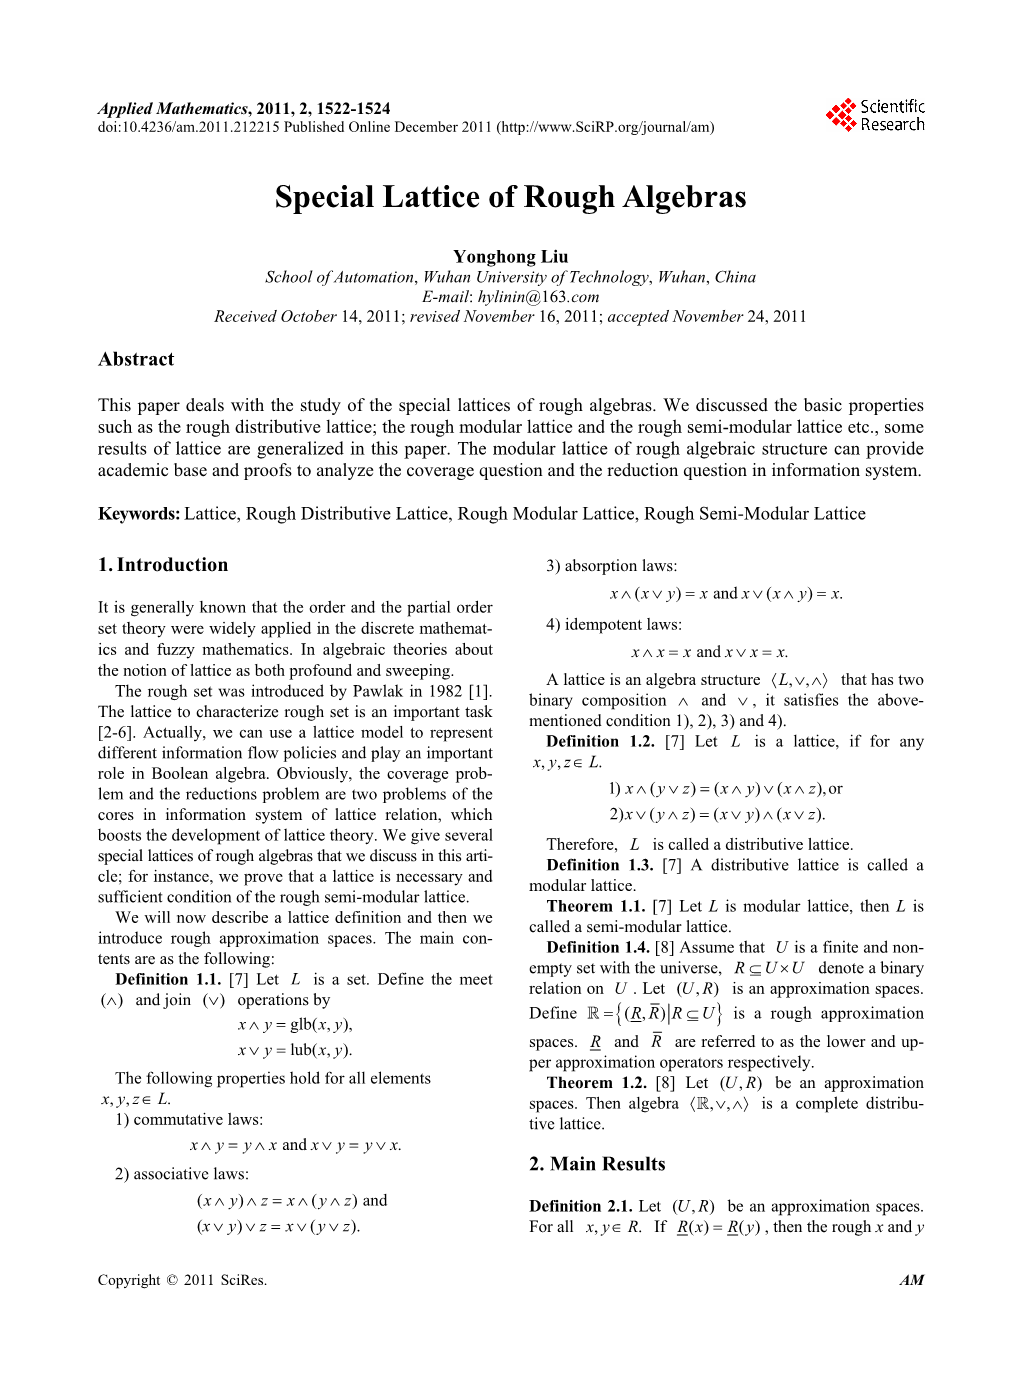 Special Lattice of Rough Algebras